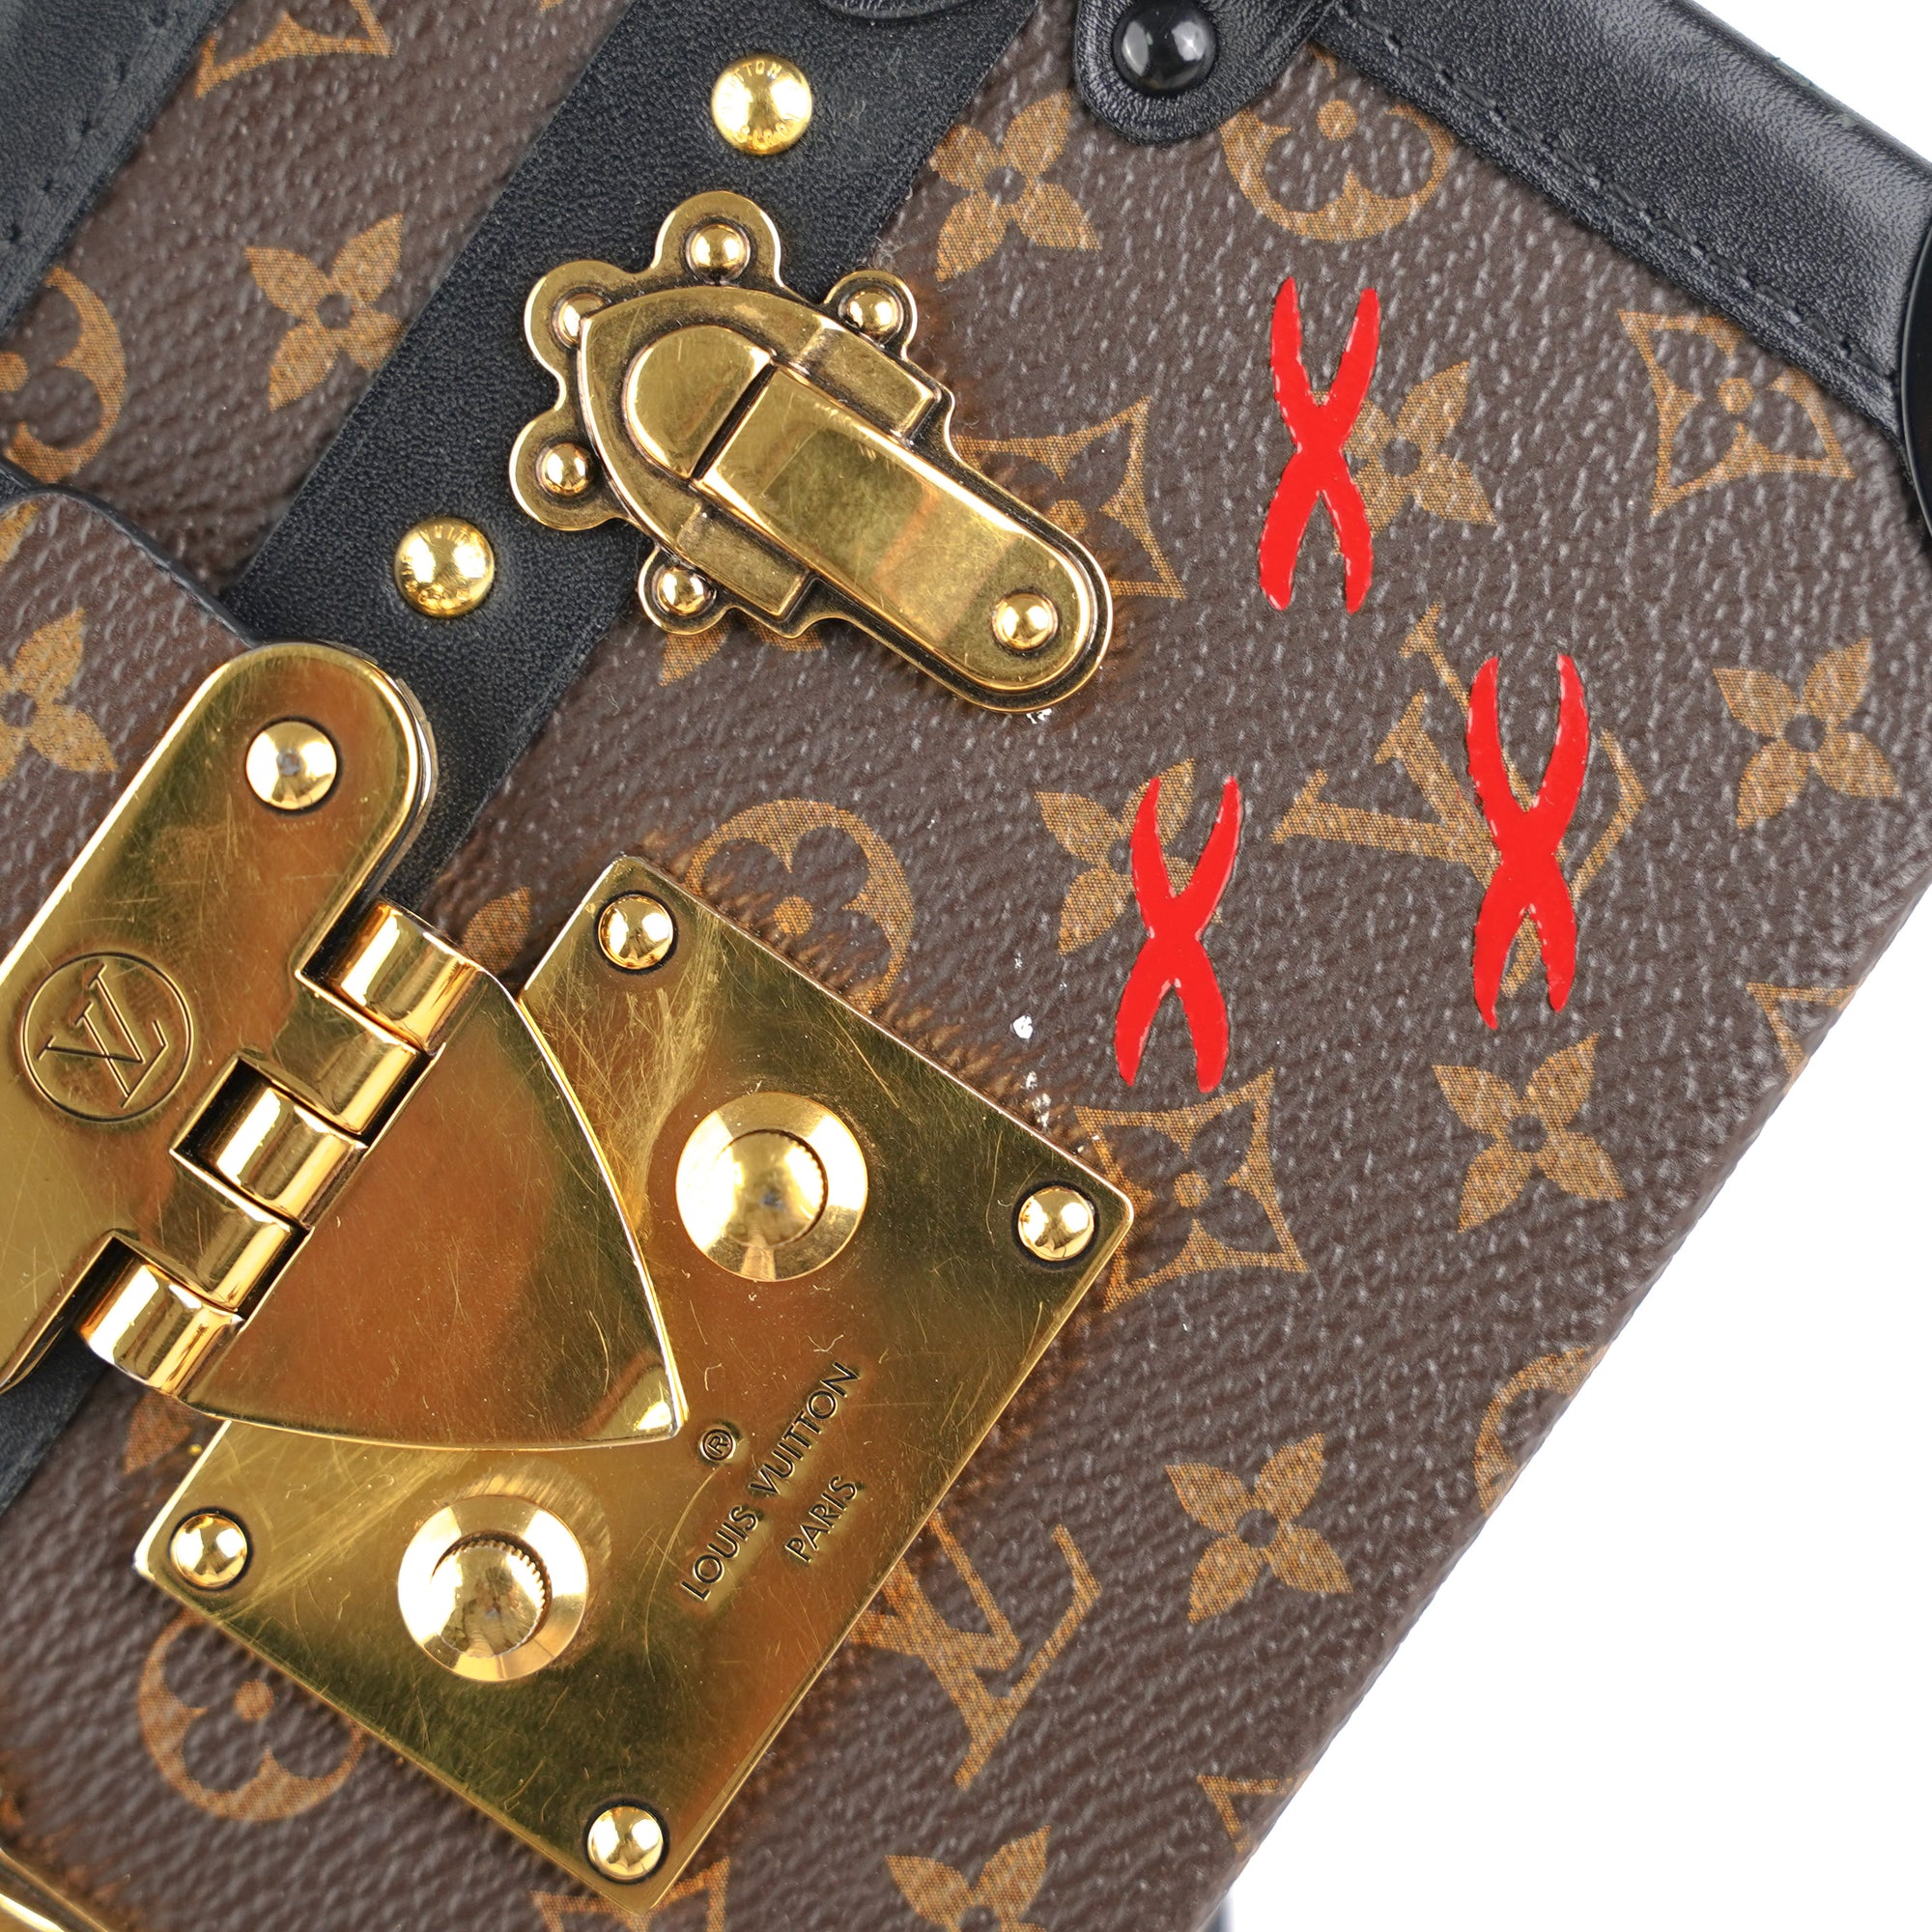 高仿Louis Vuitton M46120 Petite Malle East West 手袋單肩包老花黑帆布尺寸： 27x12x6.5cm -  Replicas-Bags